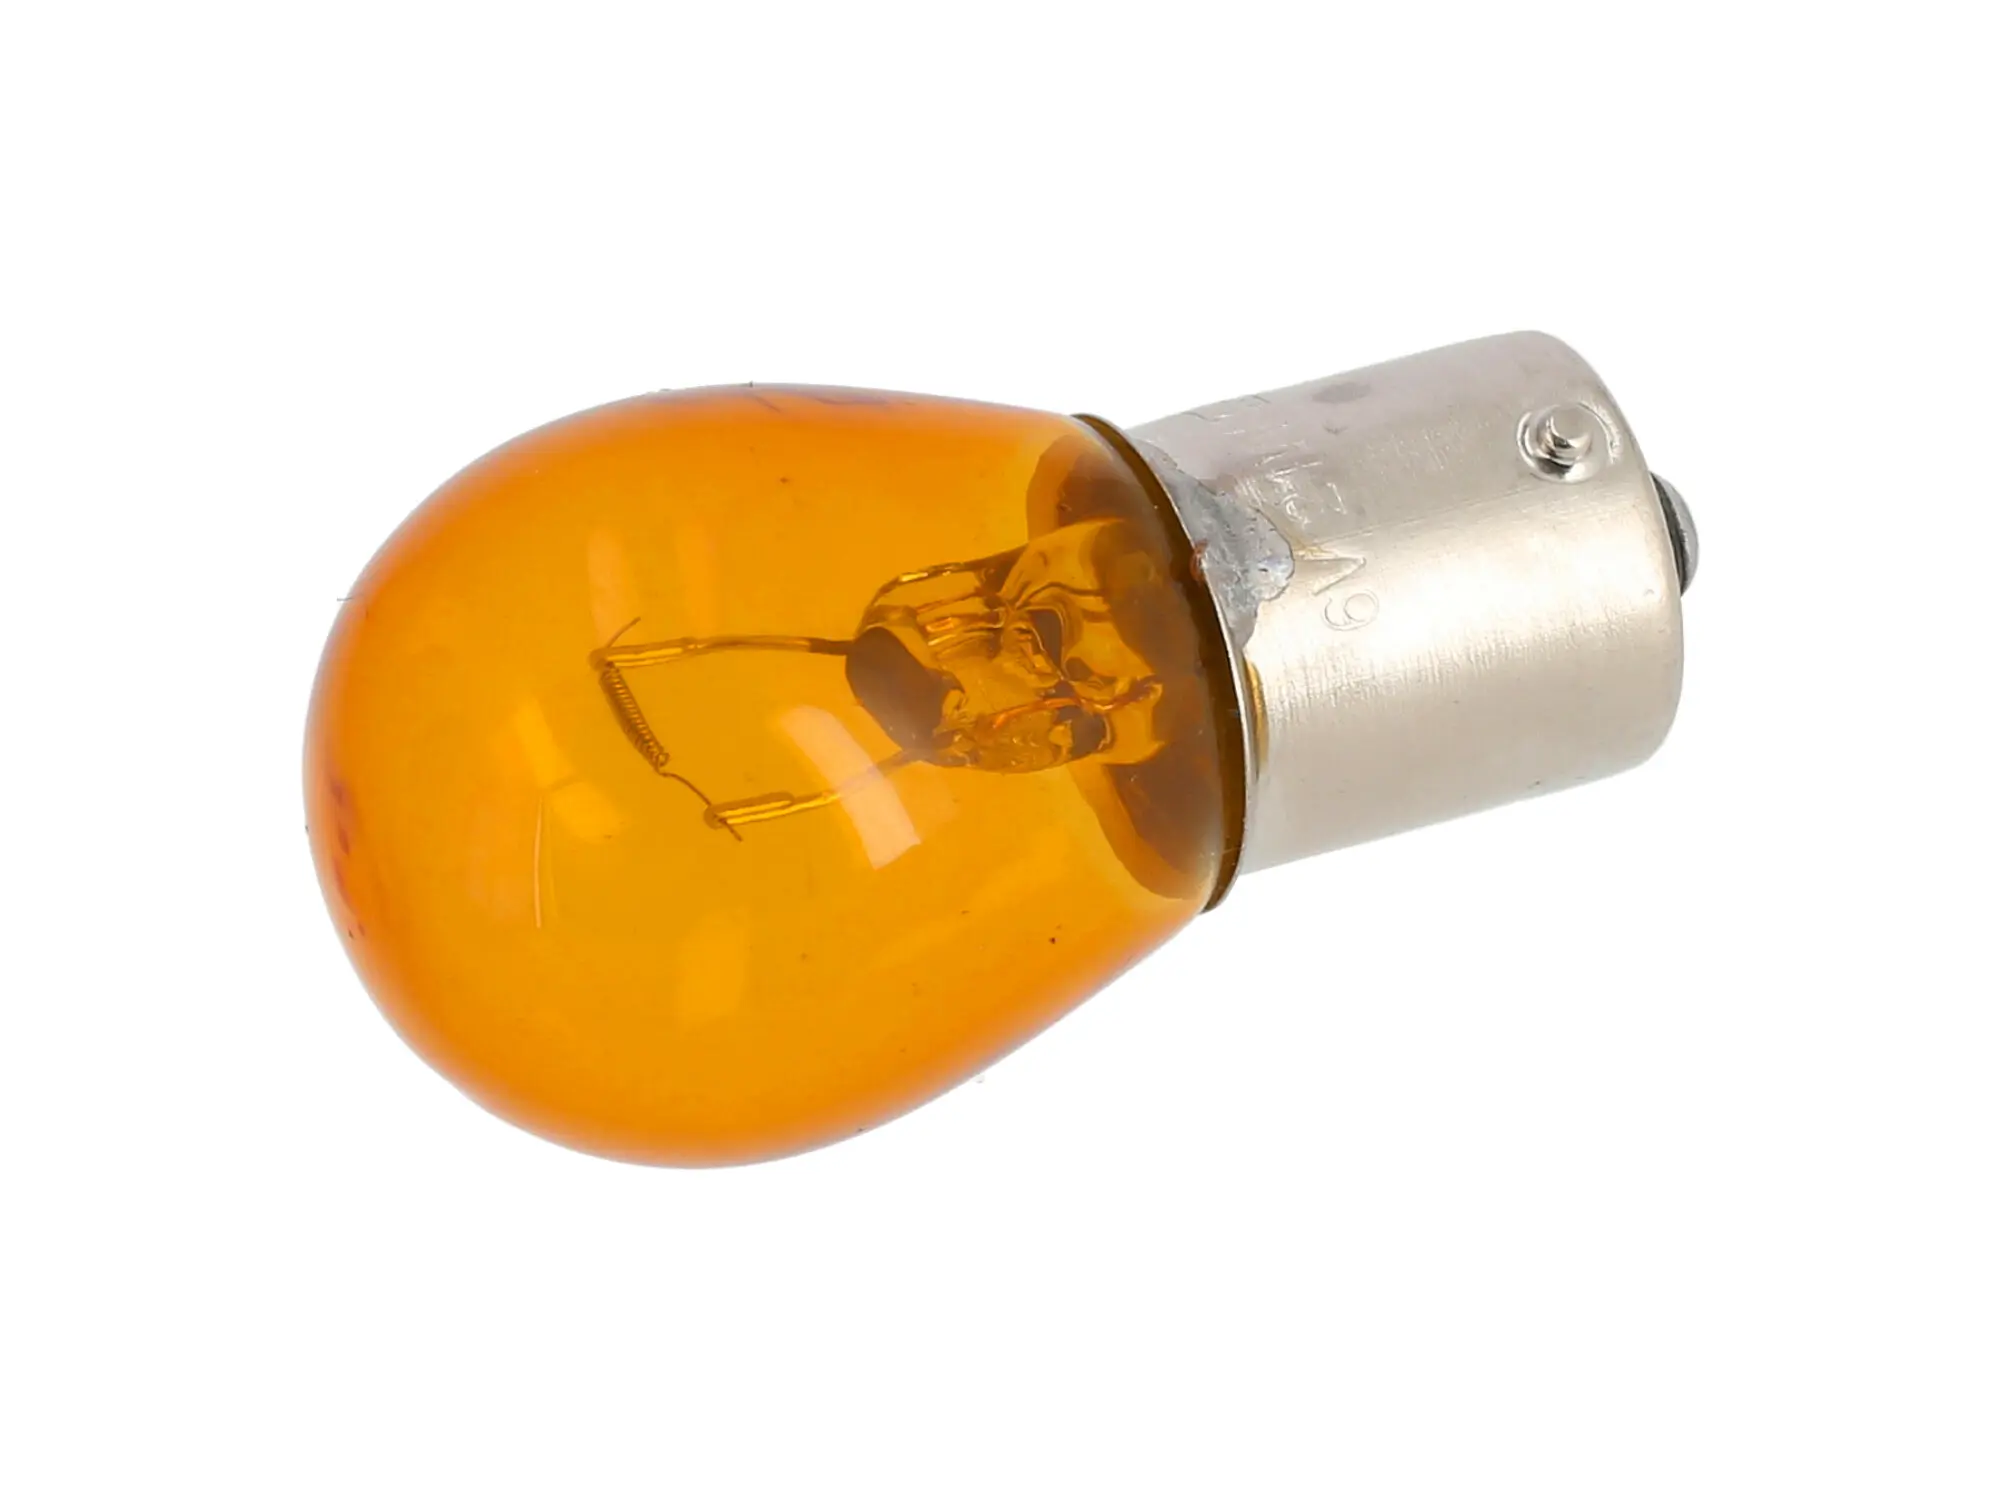 Kugellampe 6V 21W BA15s orange, von VEBCO, Art.-Nr.: 10070086 - Bild 1